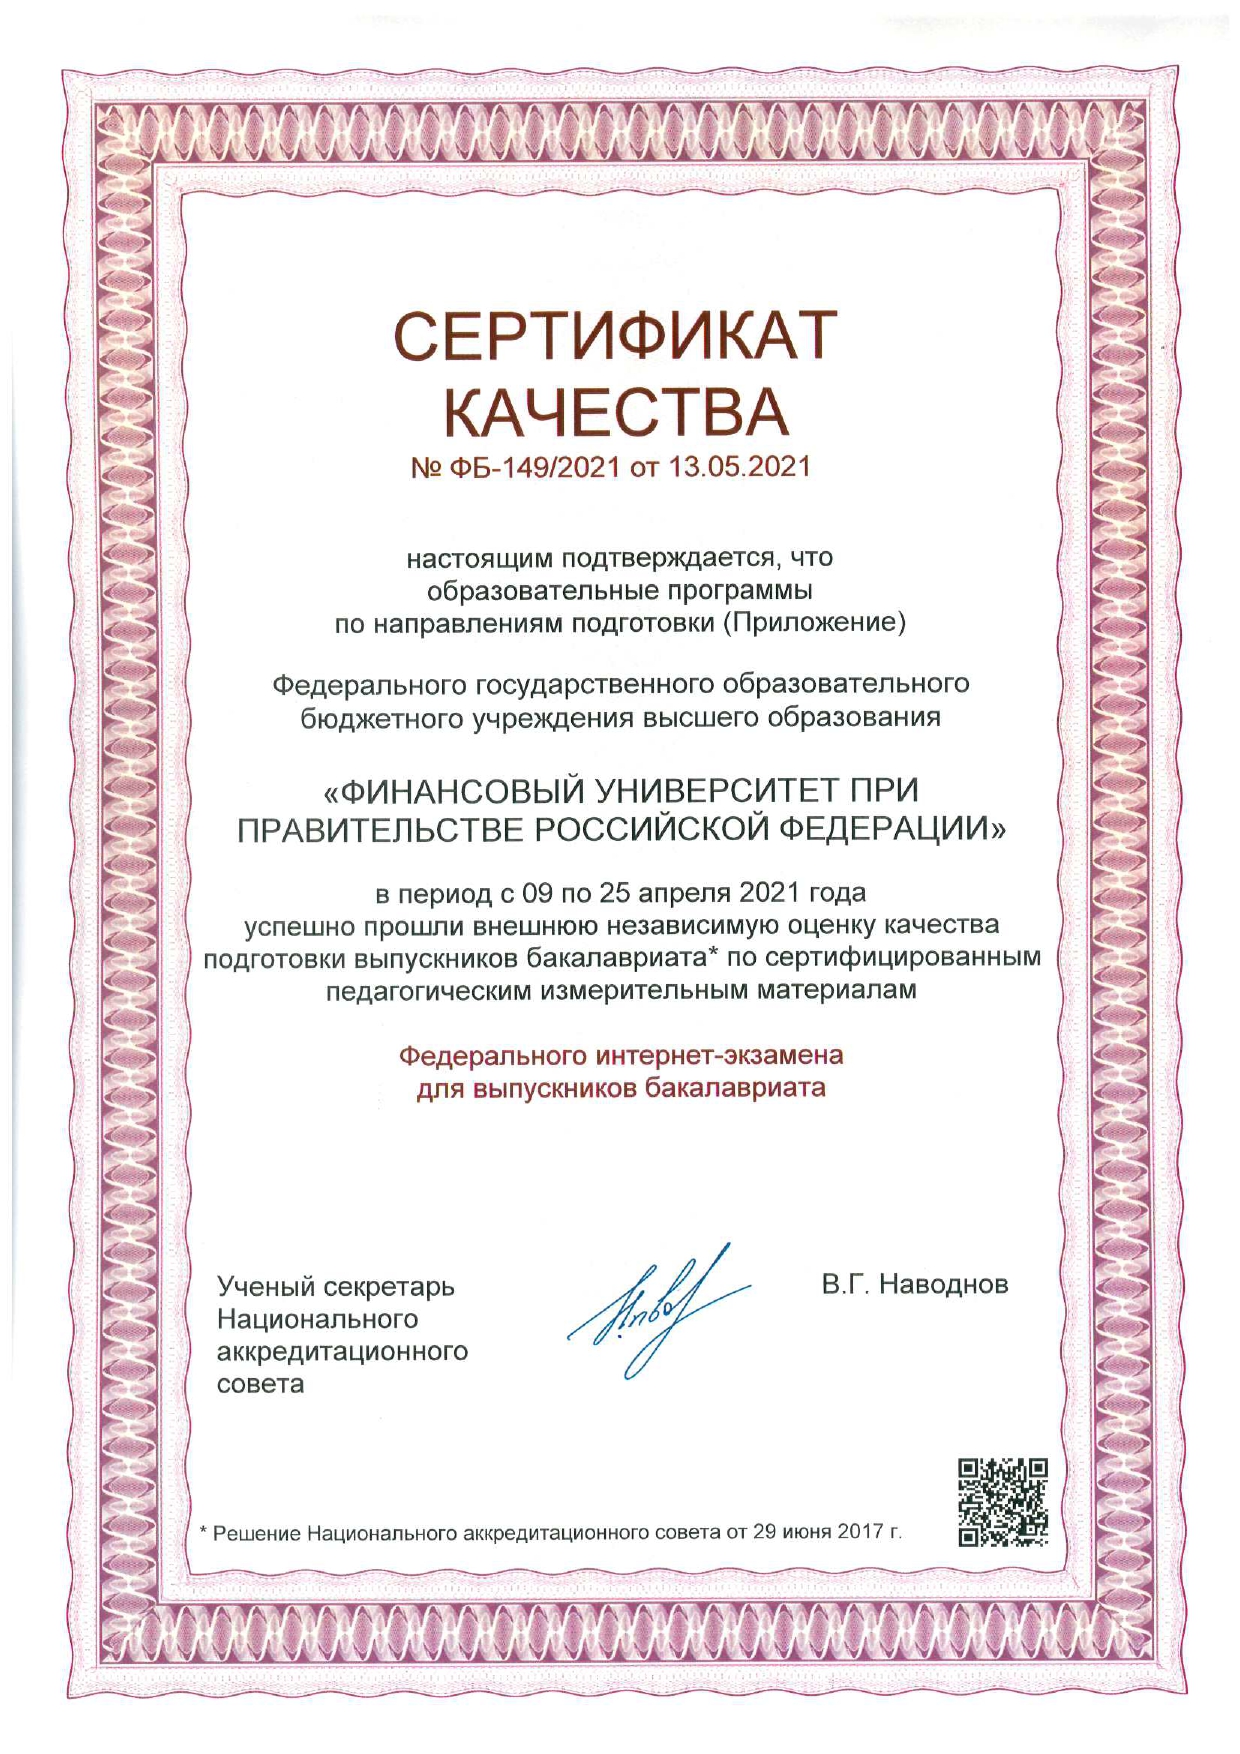 Сертификат качества ФИЭБ 2021_rotated_page-0001.jpg